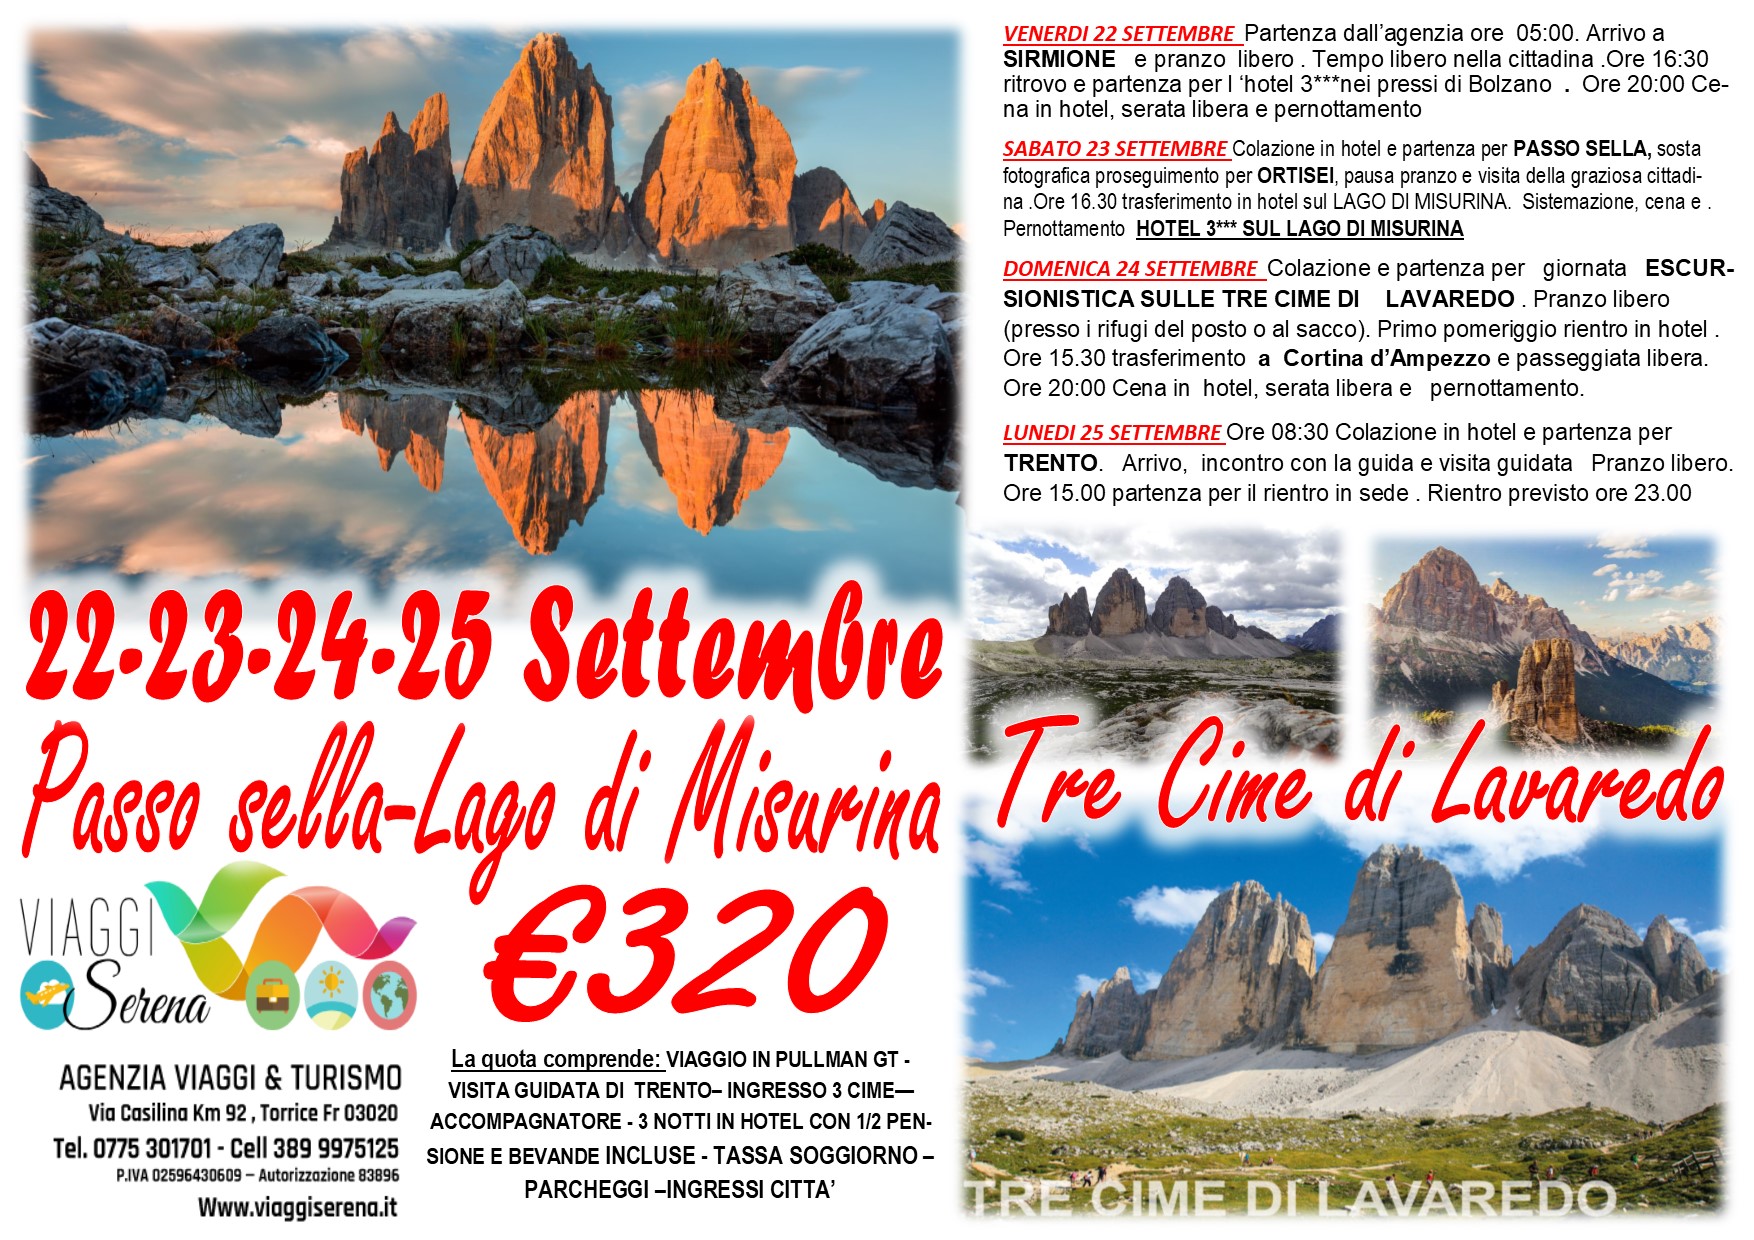 Viaggi di Gruppo: Tre Cime di Lavaredo, Passo Sella, Cortina d’Ampezzo & Trento 22-23-24-25 Settembre €320,00